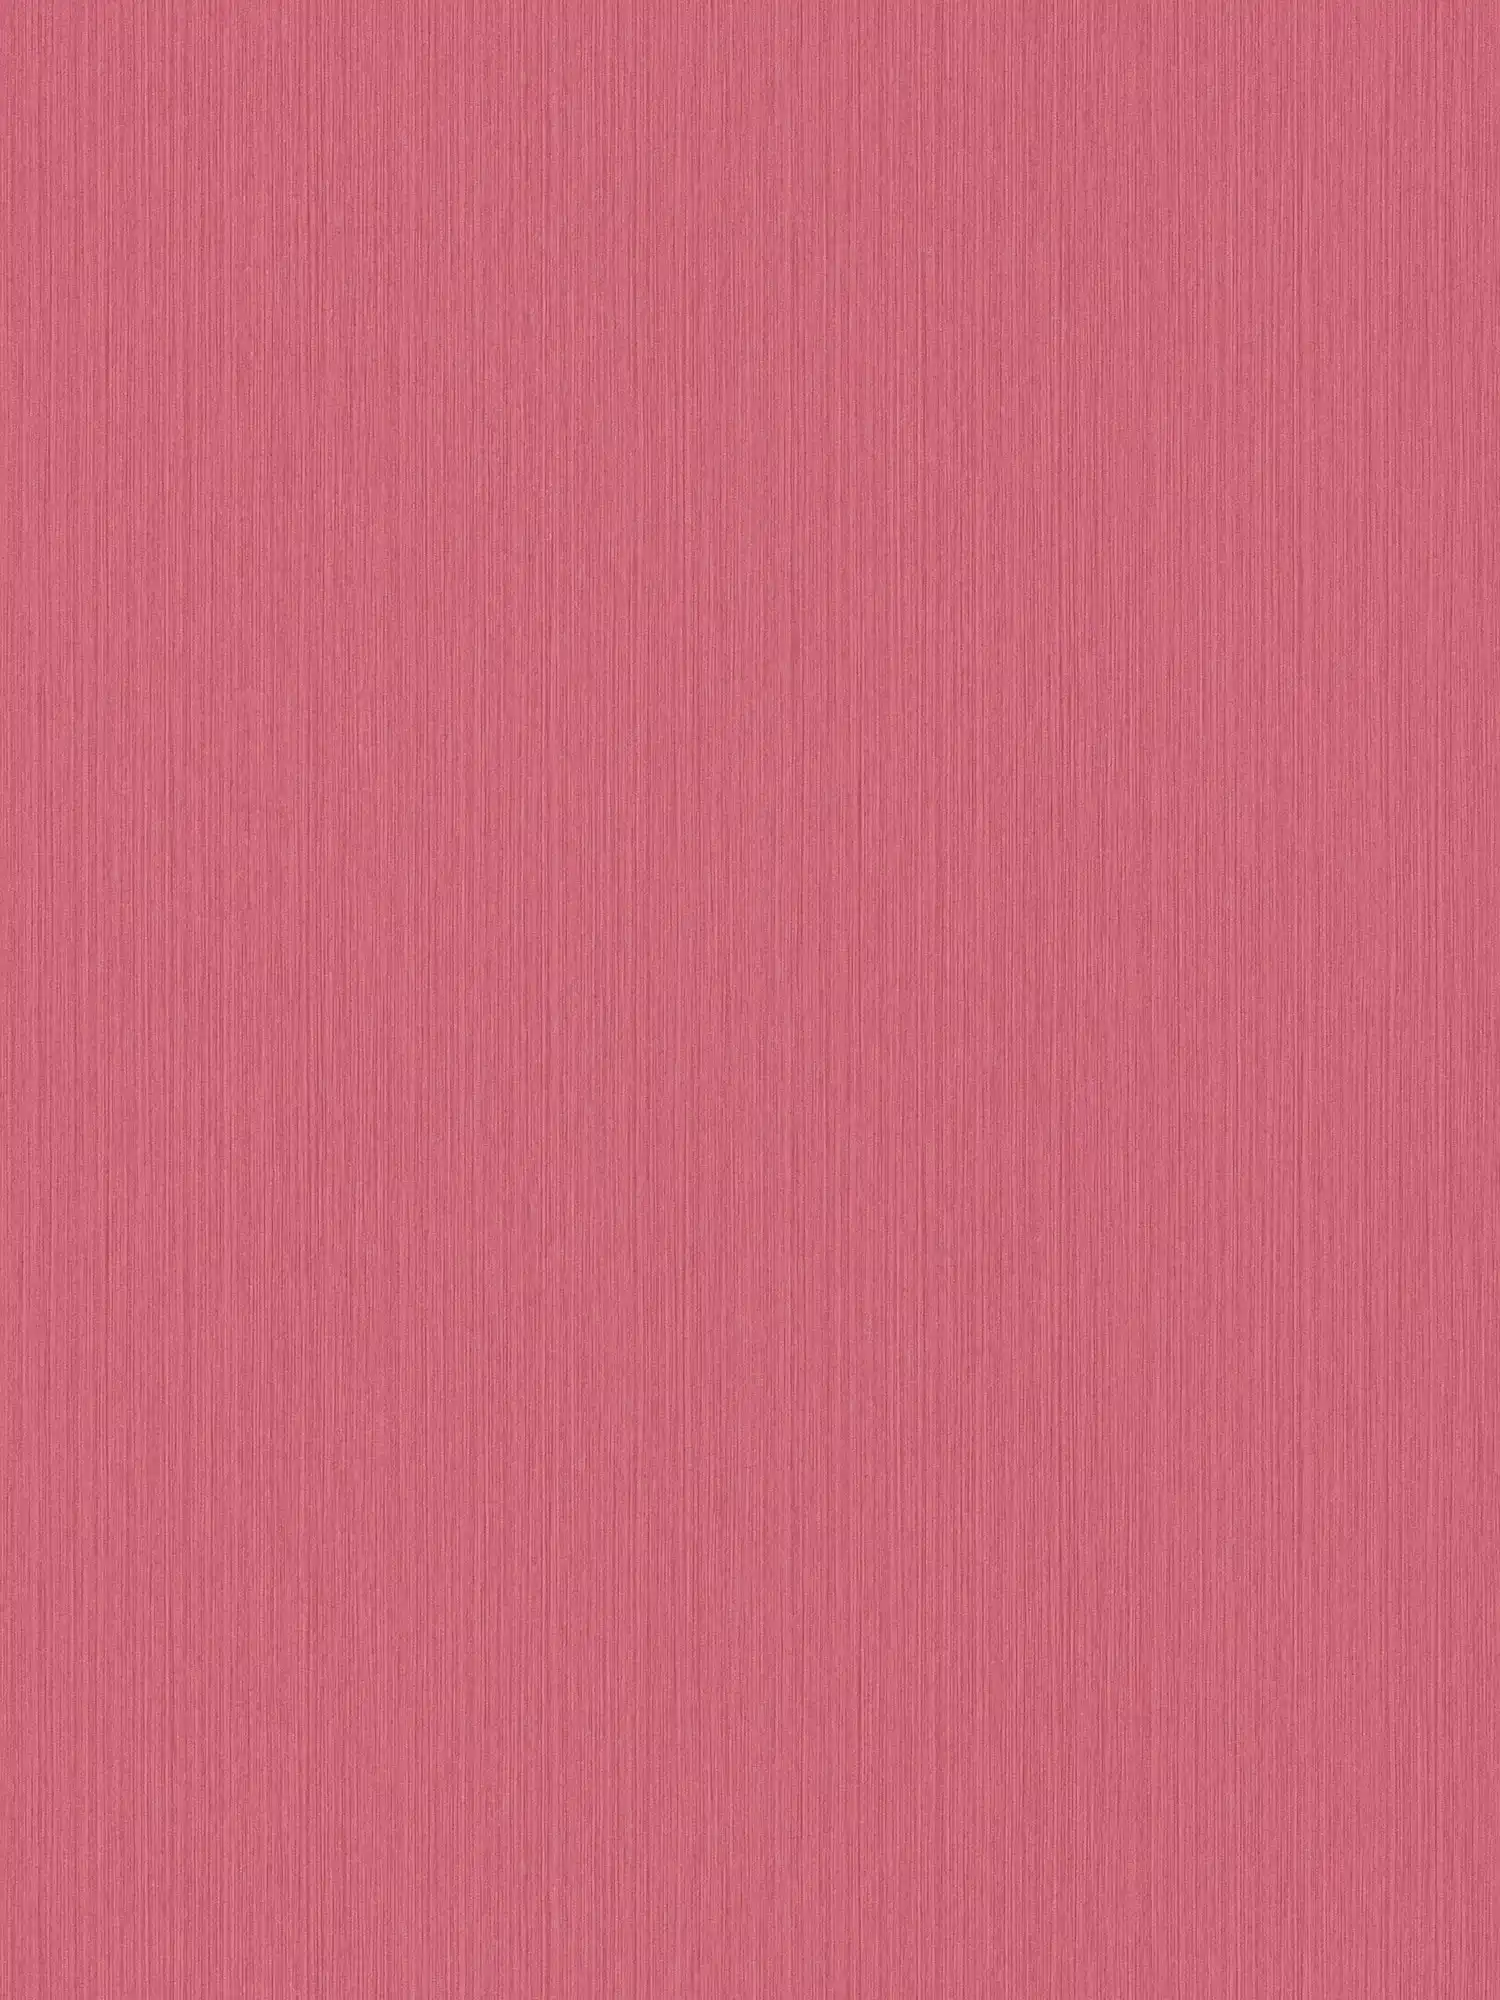 Papier peint rose avec effet textile chiné de MICHALSKY
